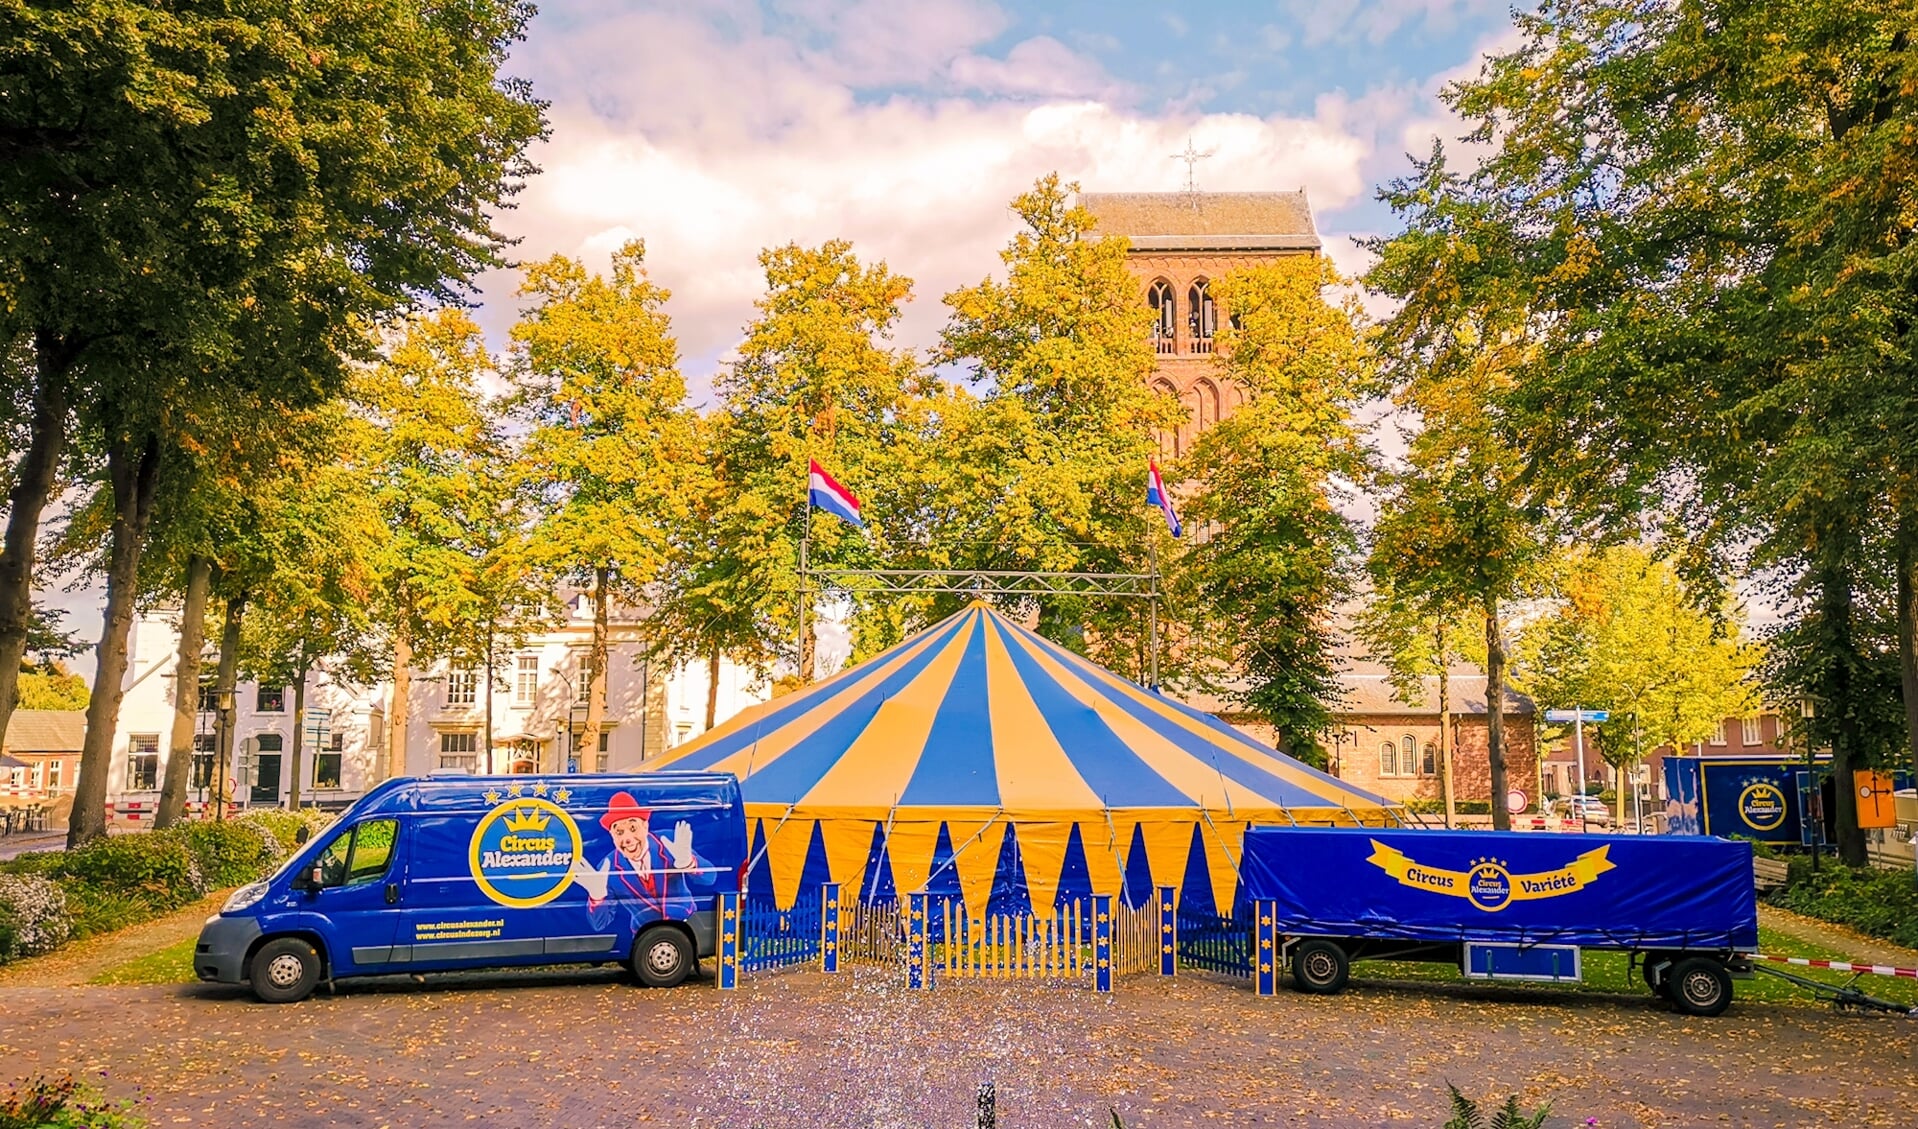 Het Circus in de Zorg wordt afgestemd op de belevingswereld van het publiek.